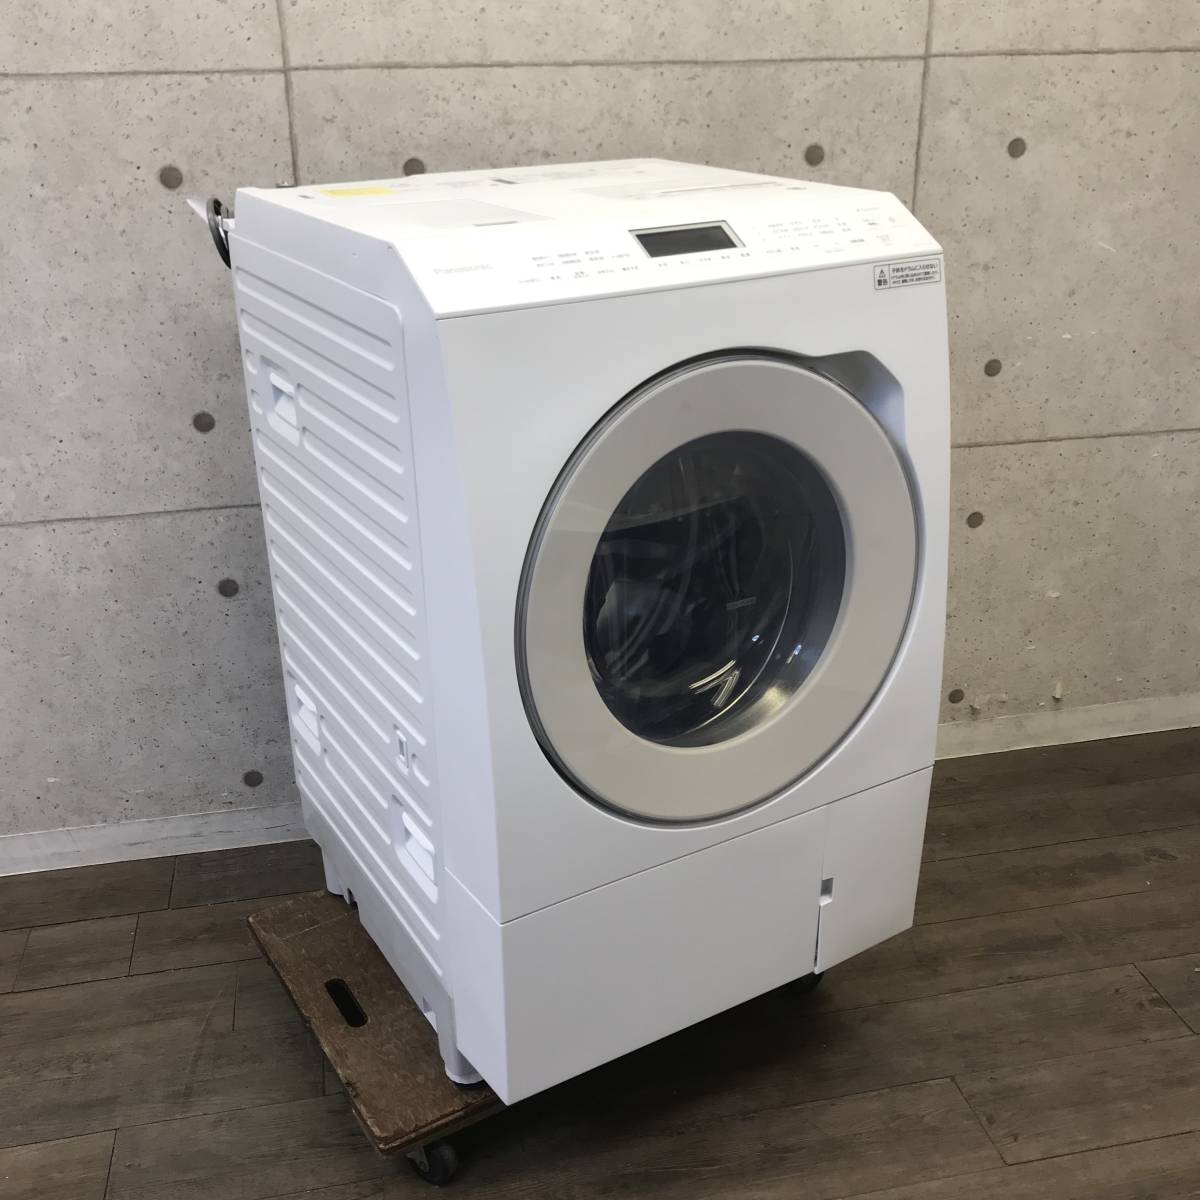 【送料無料】22年製 ななめドラム洗濯乾燥機 パナソニック NA-LX125AL 洗濯容量12kg マットホワイト スゴ落ち泡洗浄 I1215-2